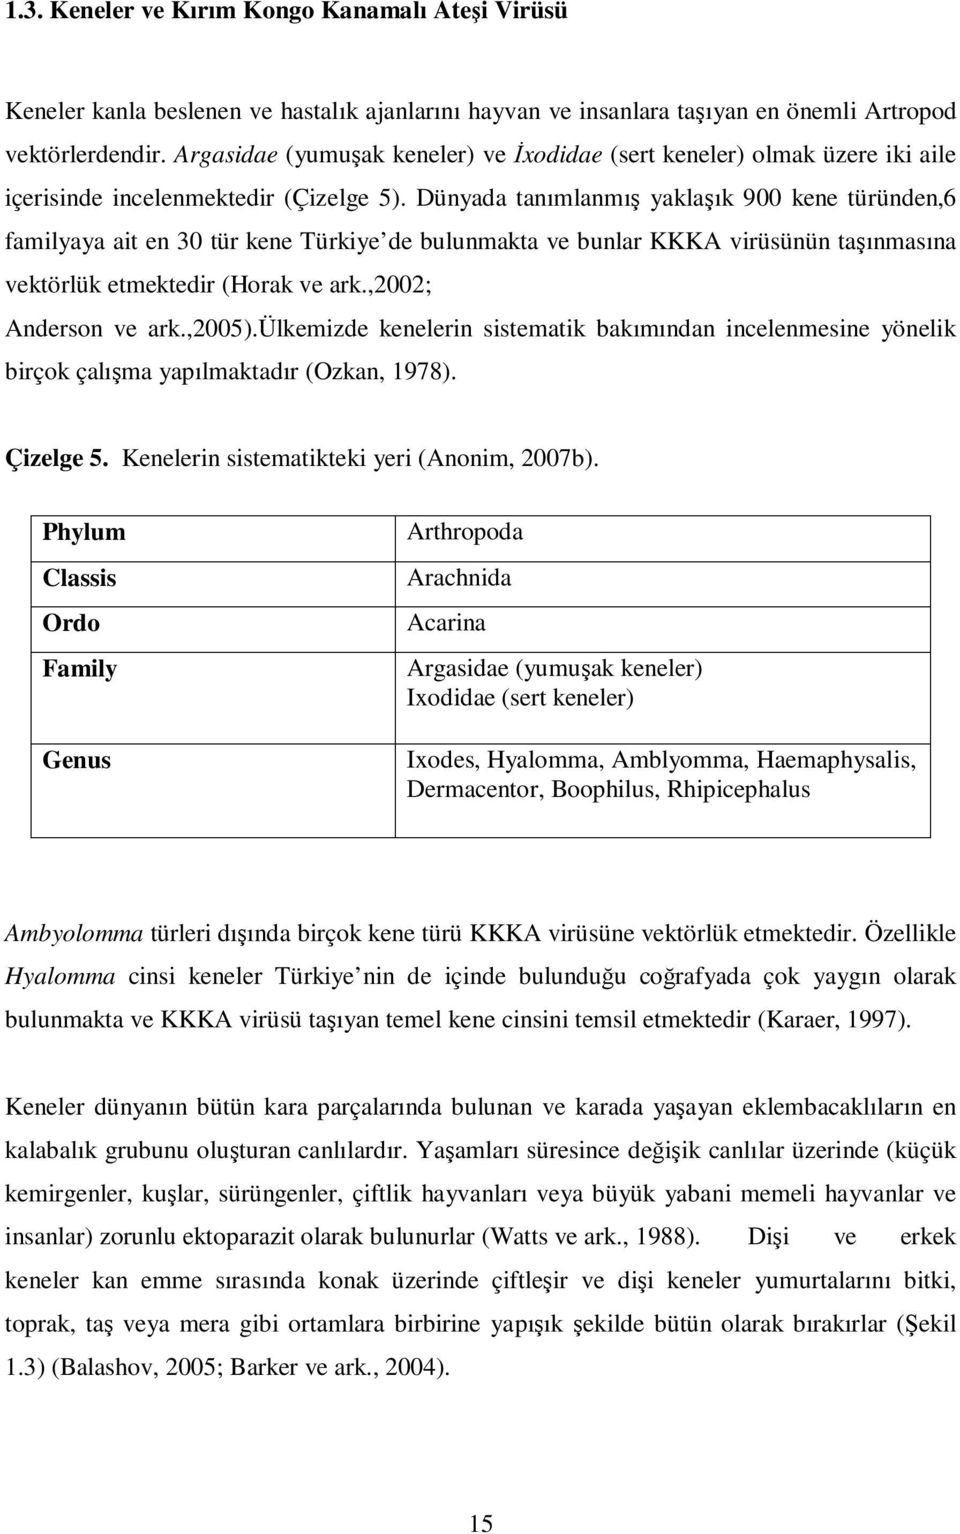 Dünyada tanımlanmış yaklaşık 900 kene türünden,6 familyaya ait en 30 tür kene Türkiye de bulunmakta ve bunlar KKKA virüsünün taşınmasına vektörlük etmektedir (Horak ve ark.,2002; Anderson ve ark.